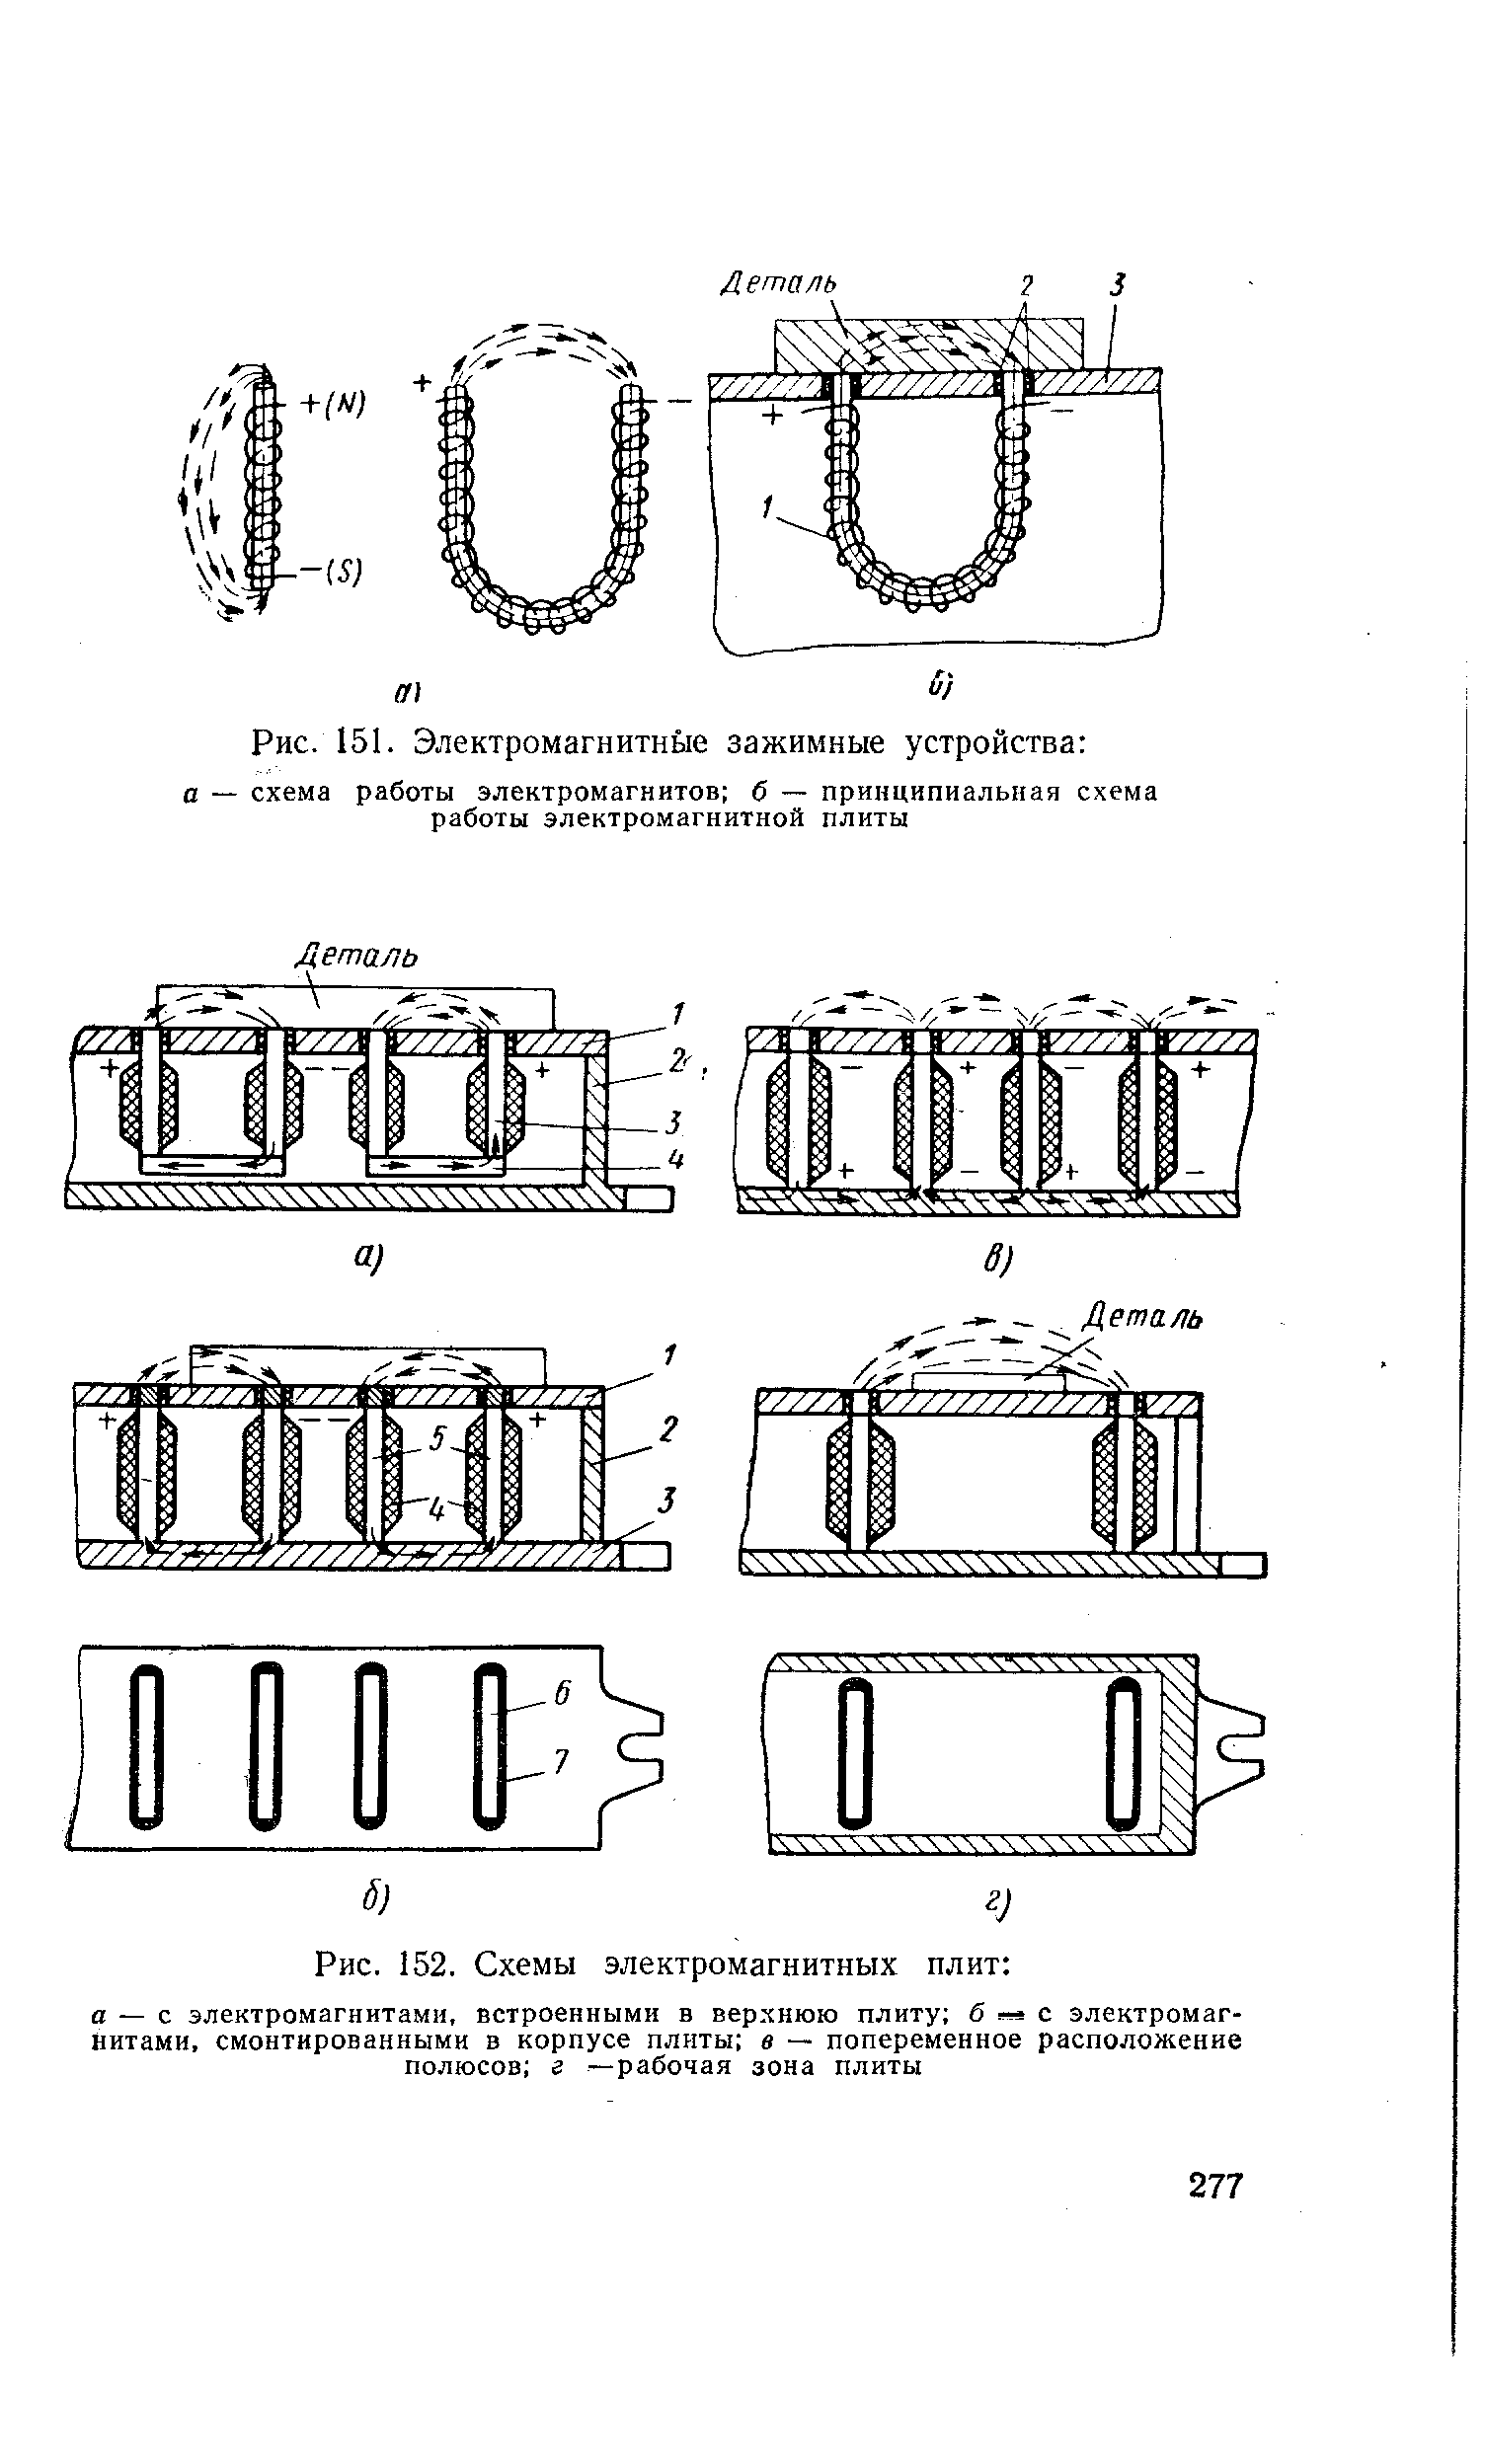 Схема подключения электромагнитной плиты